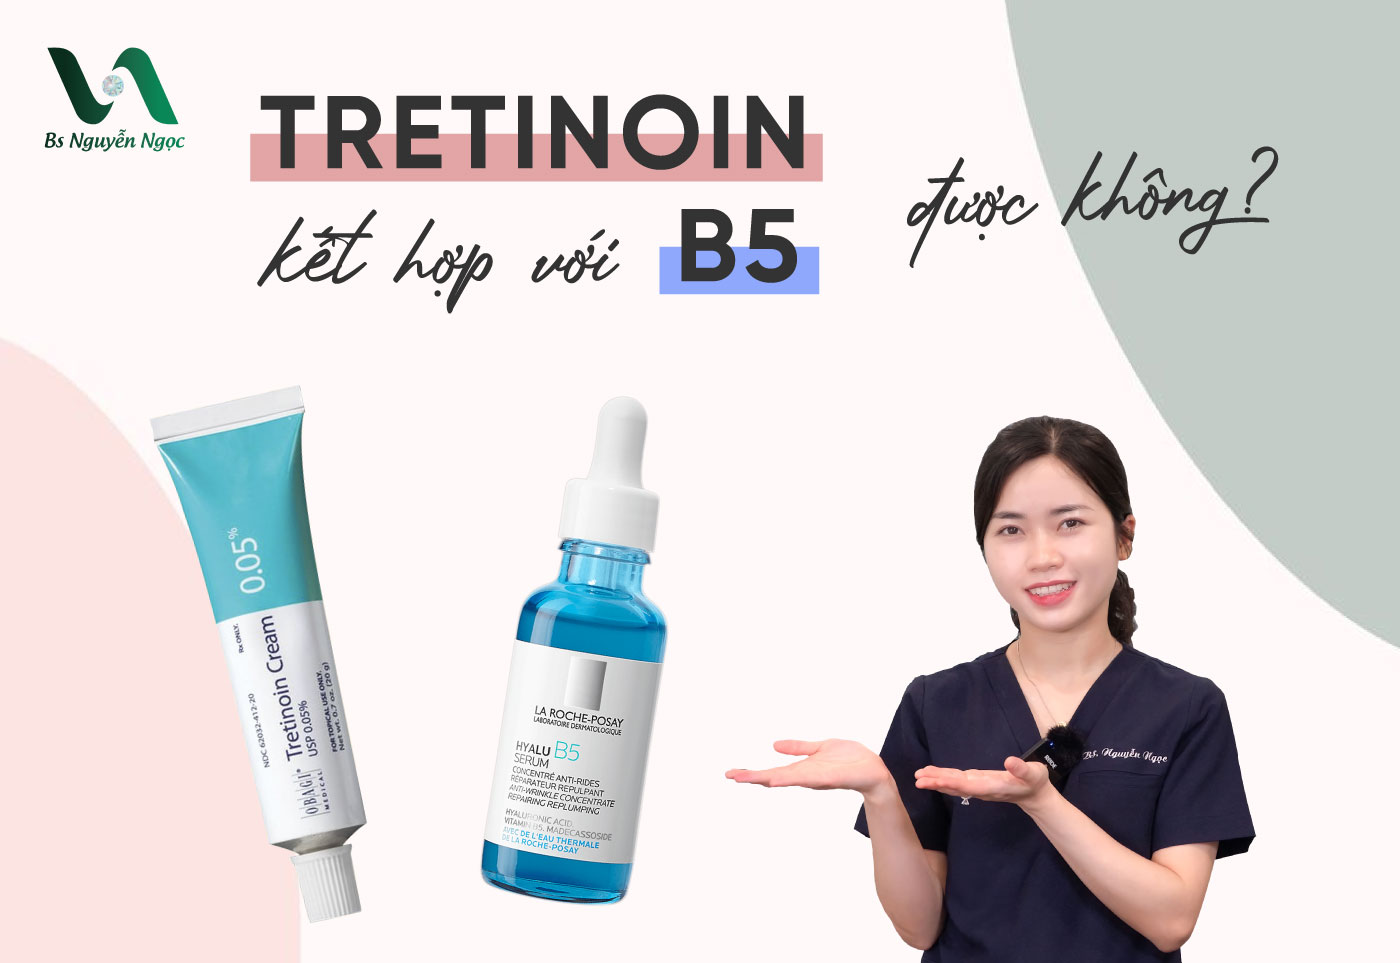 Tretinoin kết hợp với B5 có được không?